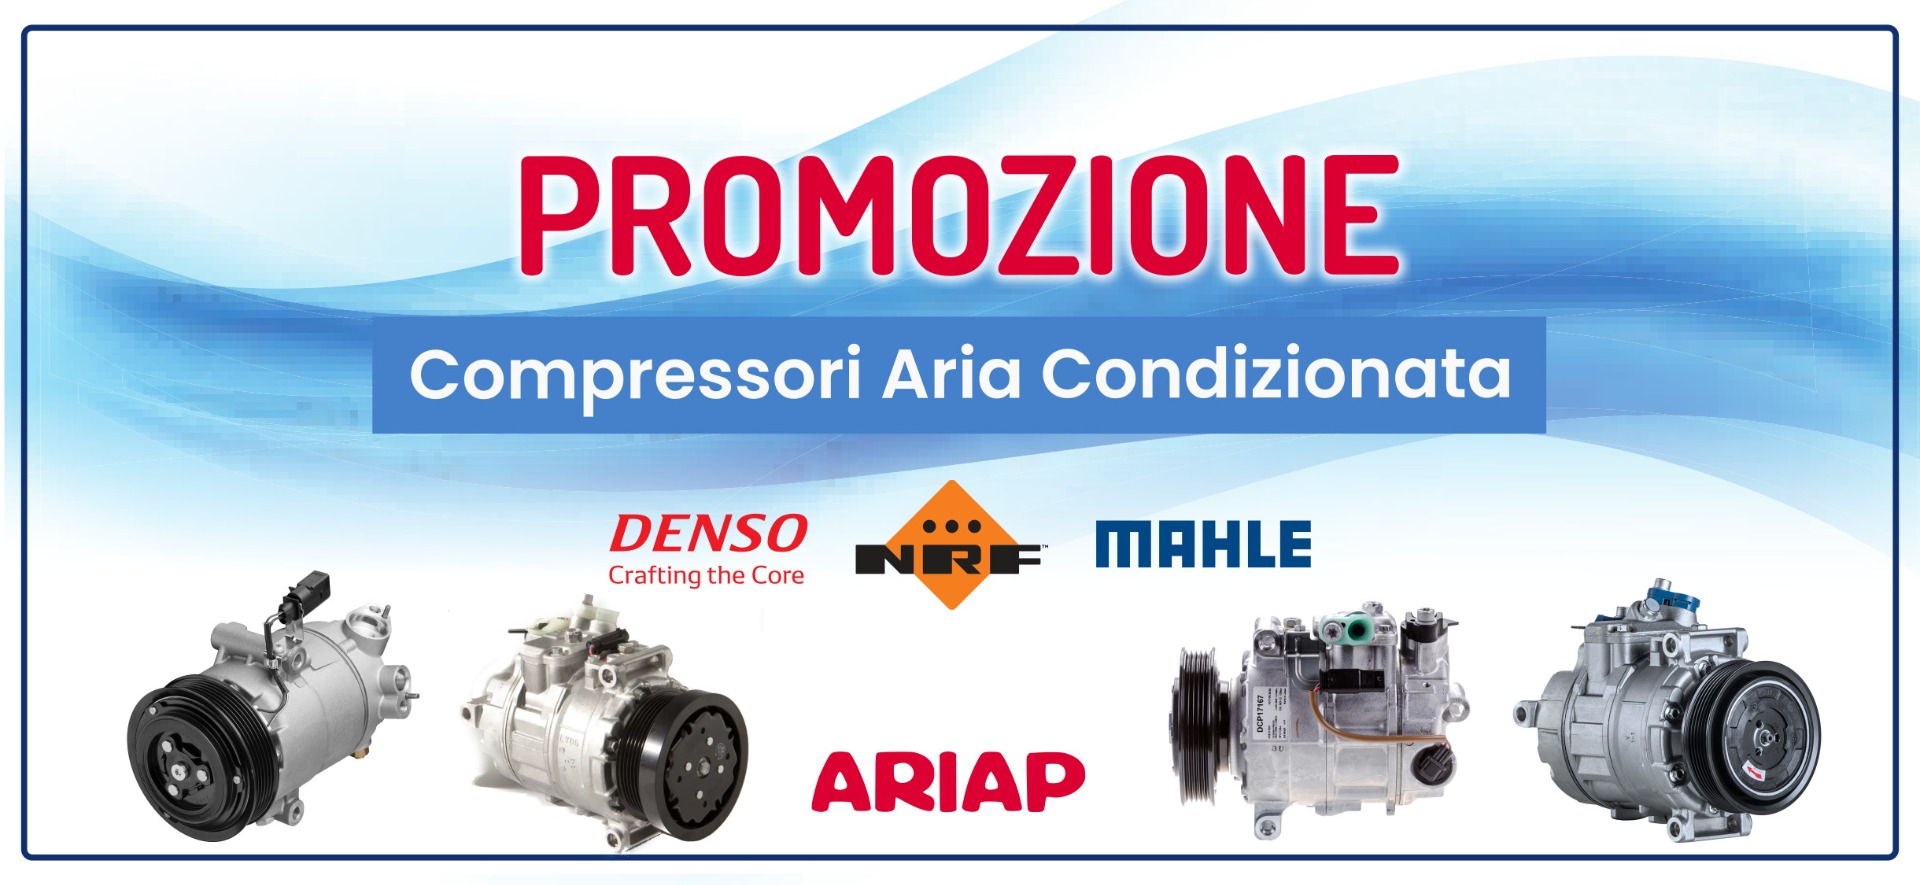 Promo compressori Aria Condizionata - Ariap ricambi trucks